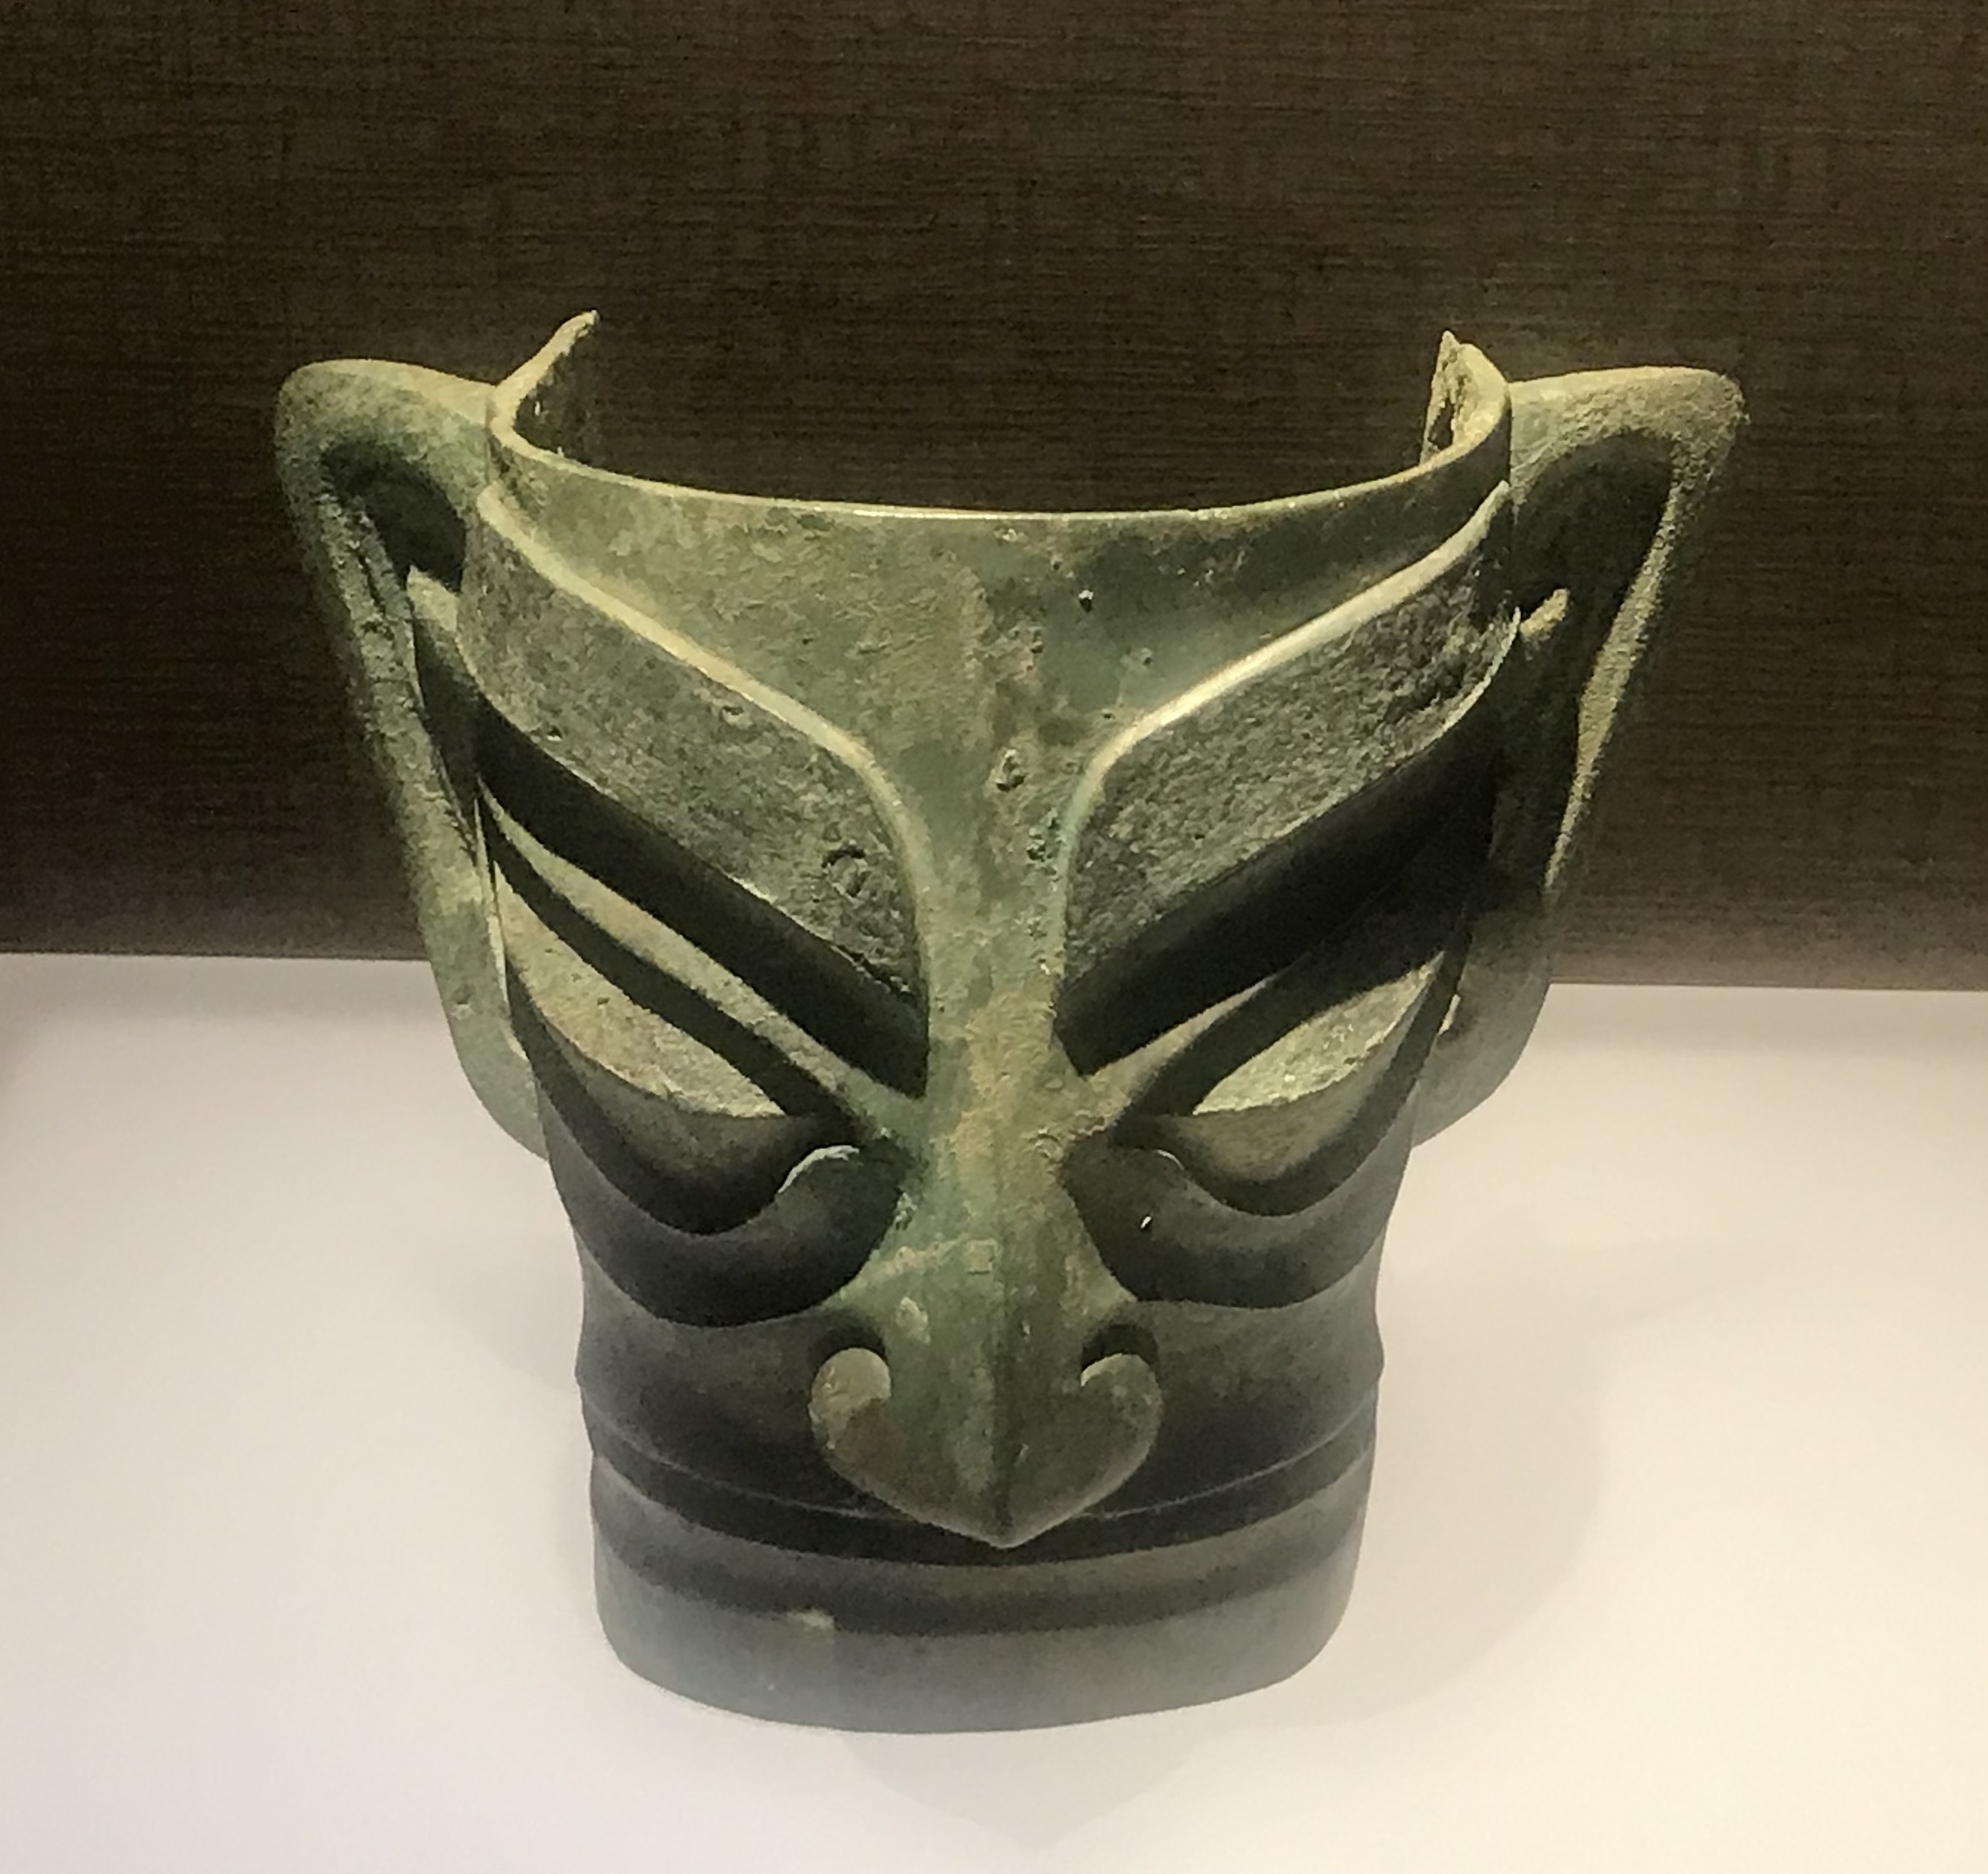  青銅人面具１-青銅器館-三星堆博物館-広漢市-徳陽市-四川省